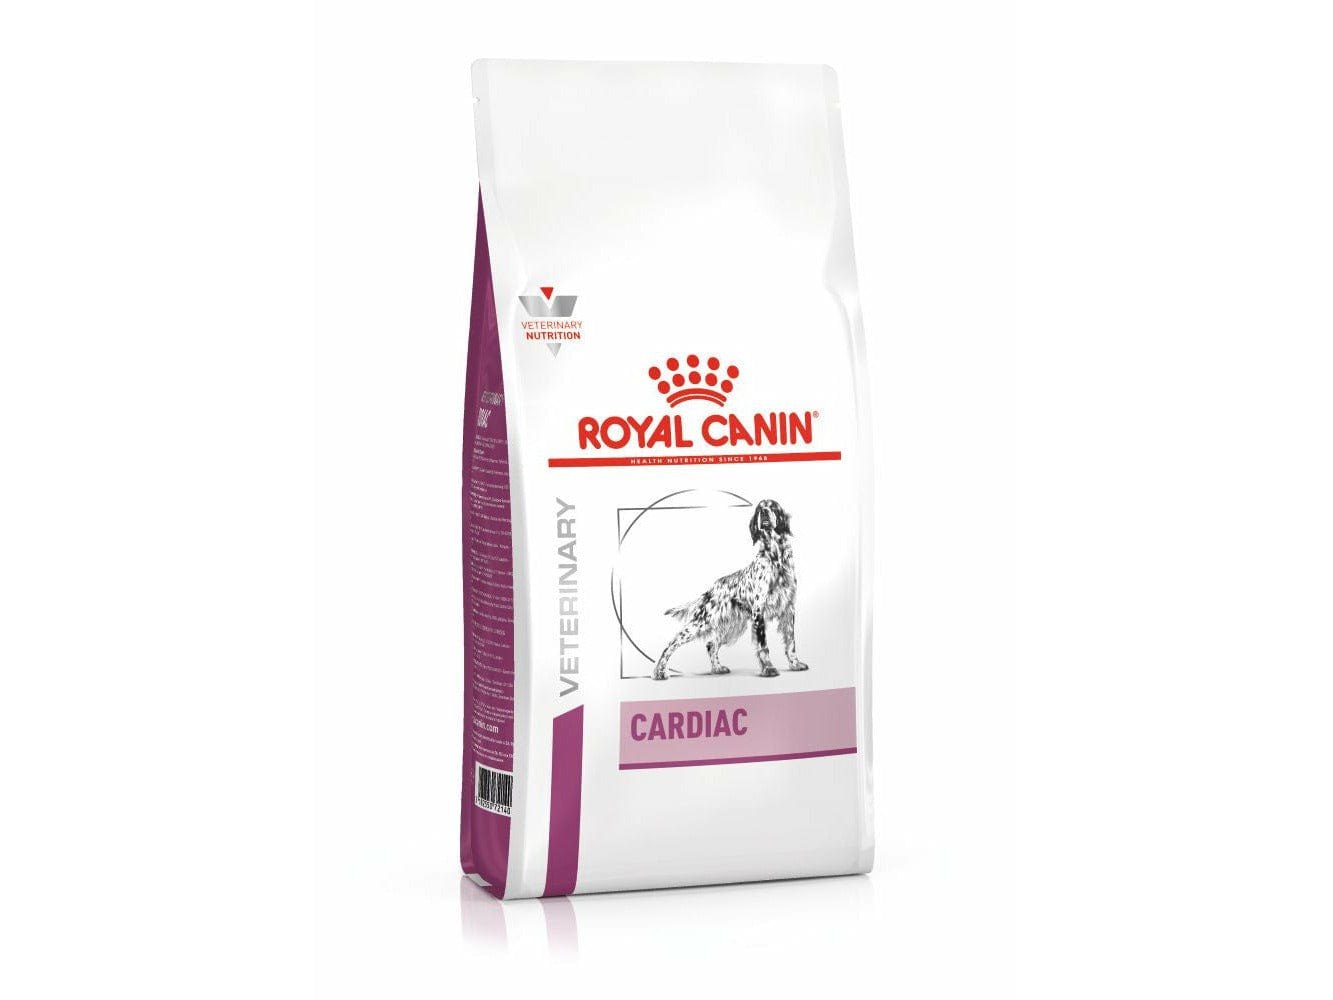 Vet Health Nutrition Canine Cardiac 2 Kg